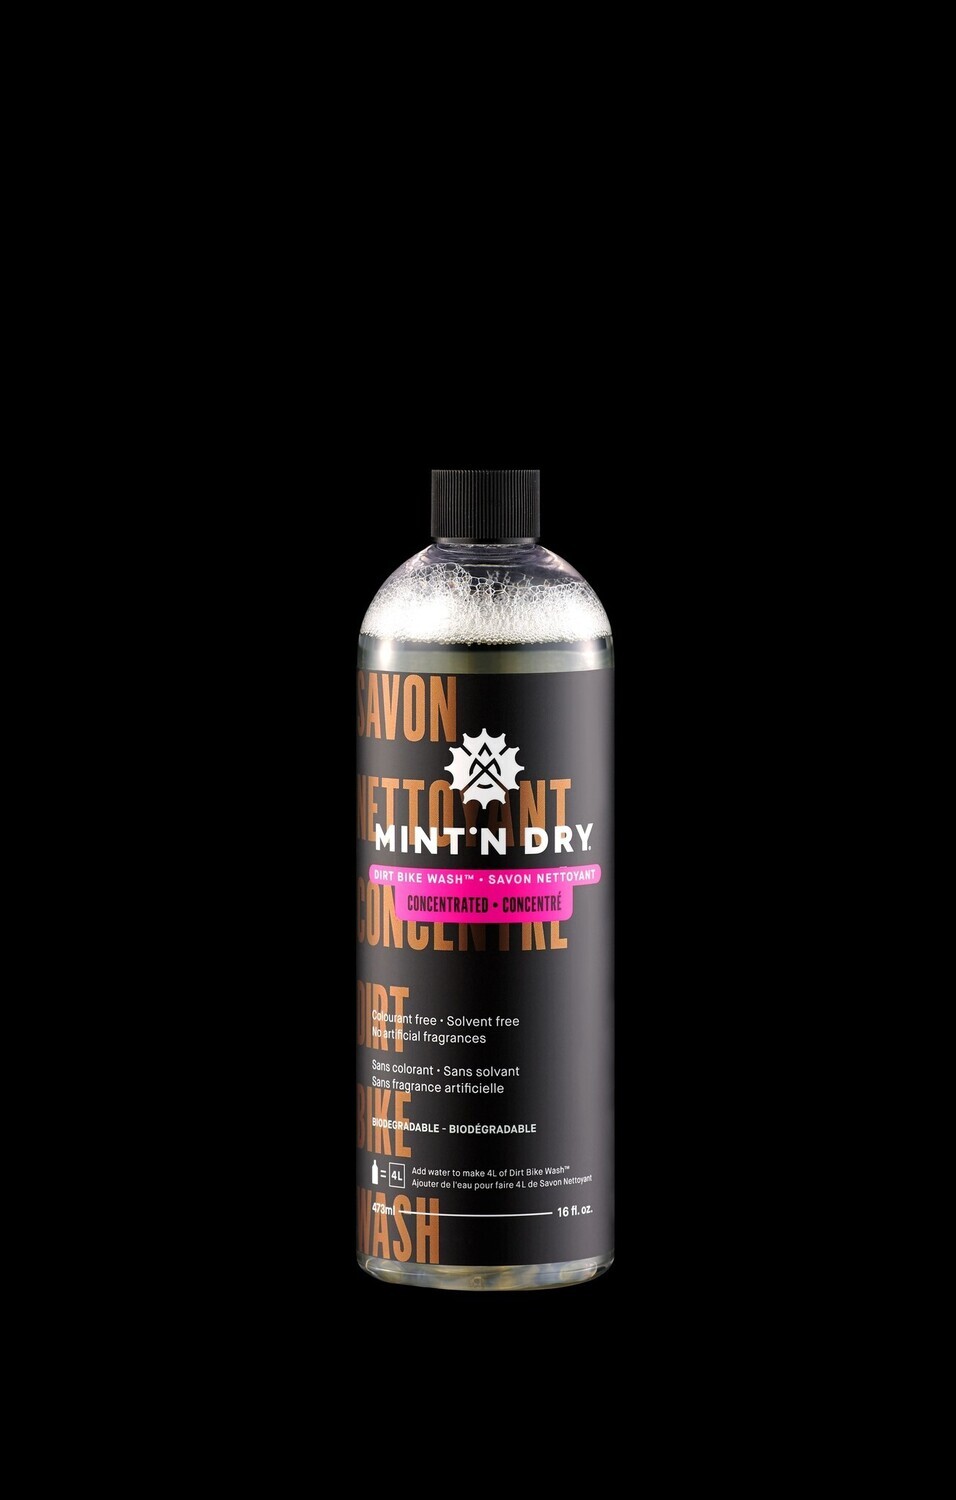 Nettoyant Mint'n Dry savon nettoyant pour la boue concentre - 473ml